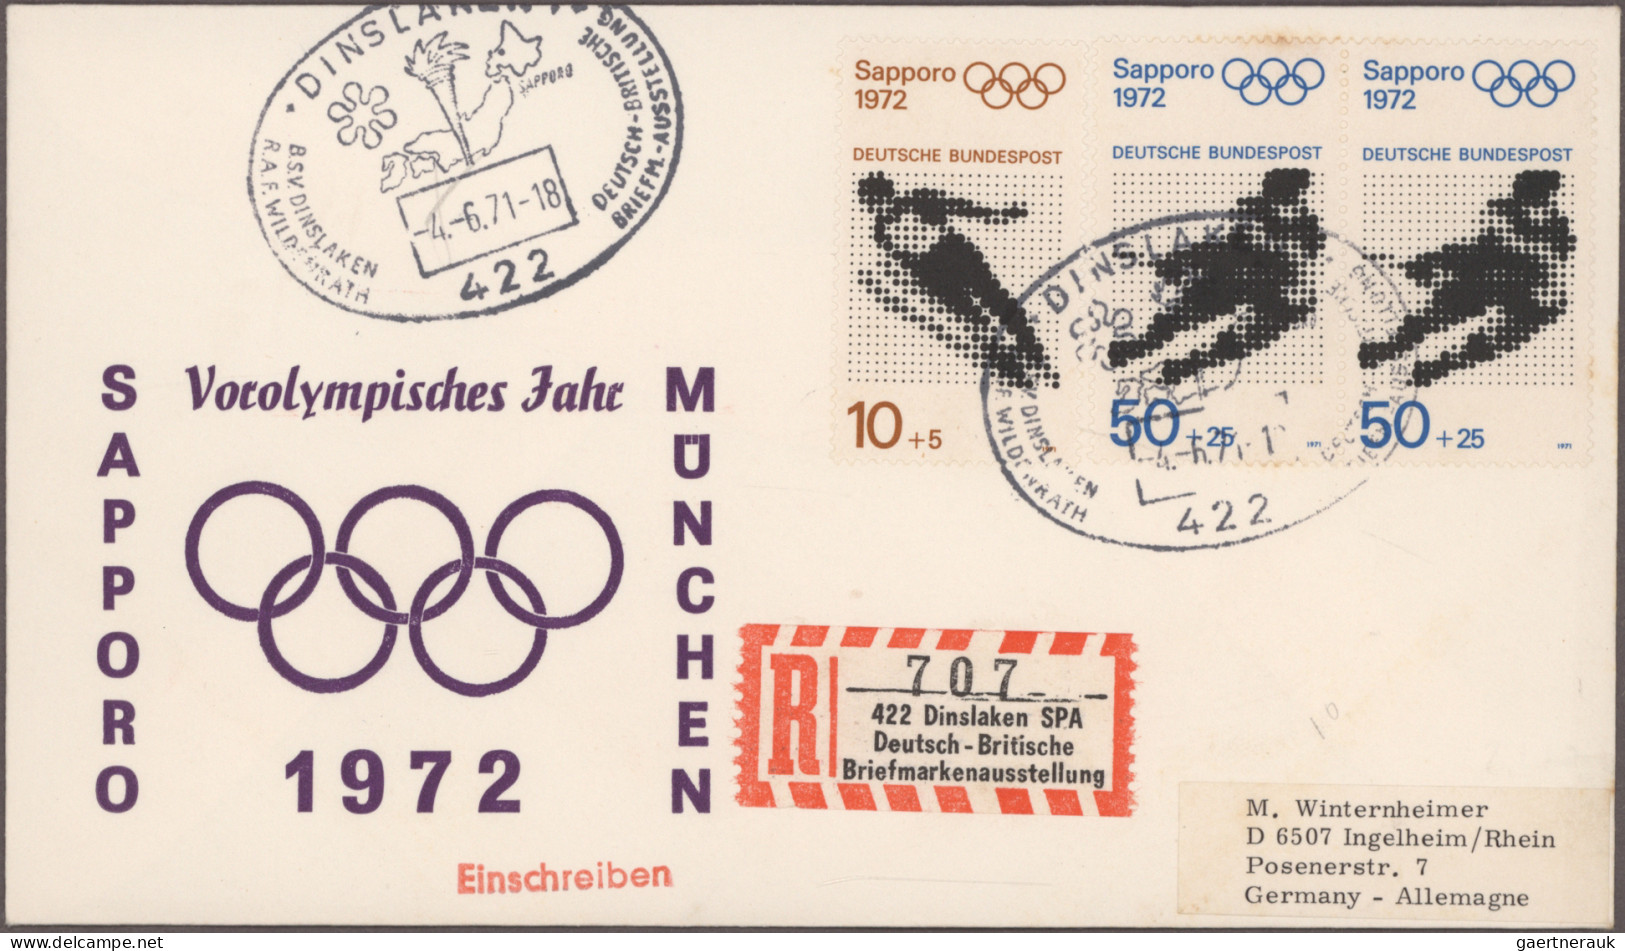 Thematics: Olympic Games: 1972, München, vielseitige Partie von ca. 150 Briefen